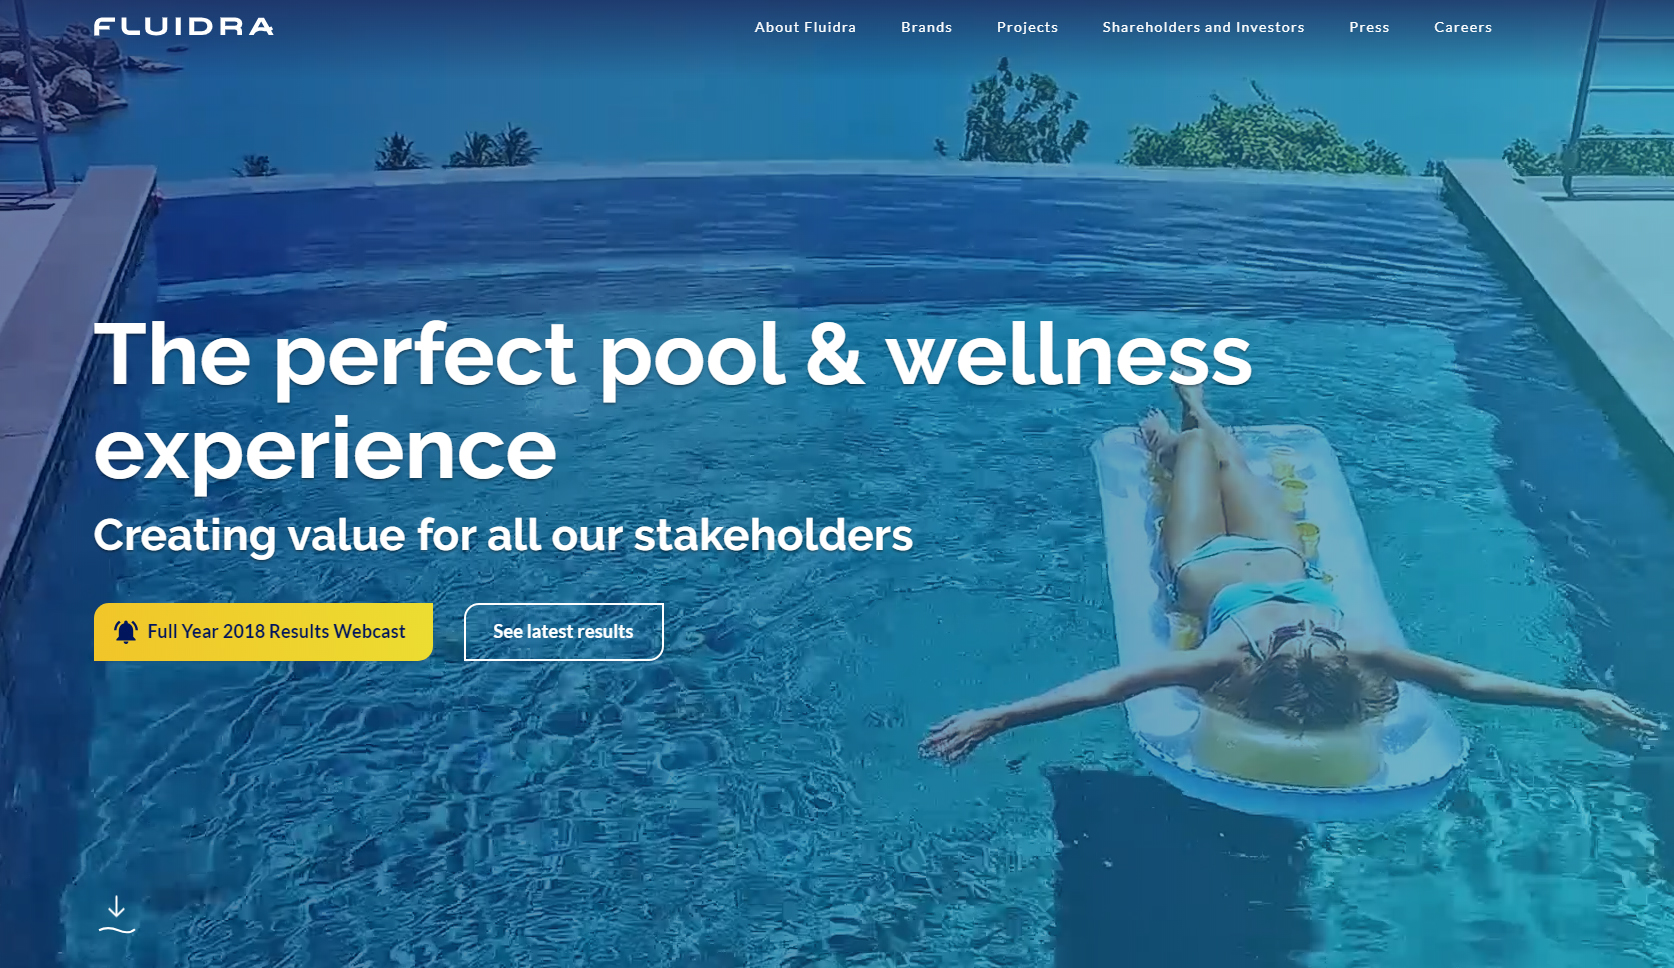 Fluidra lanza su nueva web corporativa y reafirma su liderazgo en el sector de la piscina y wellness